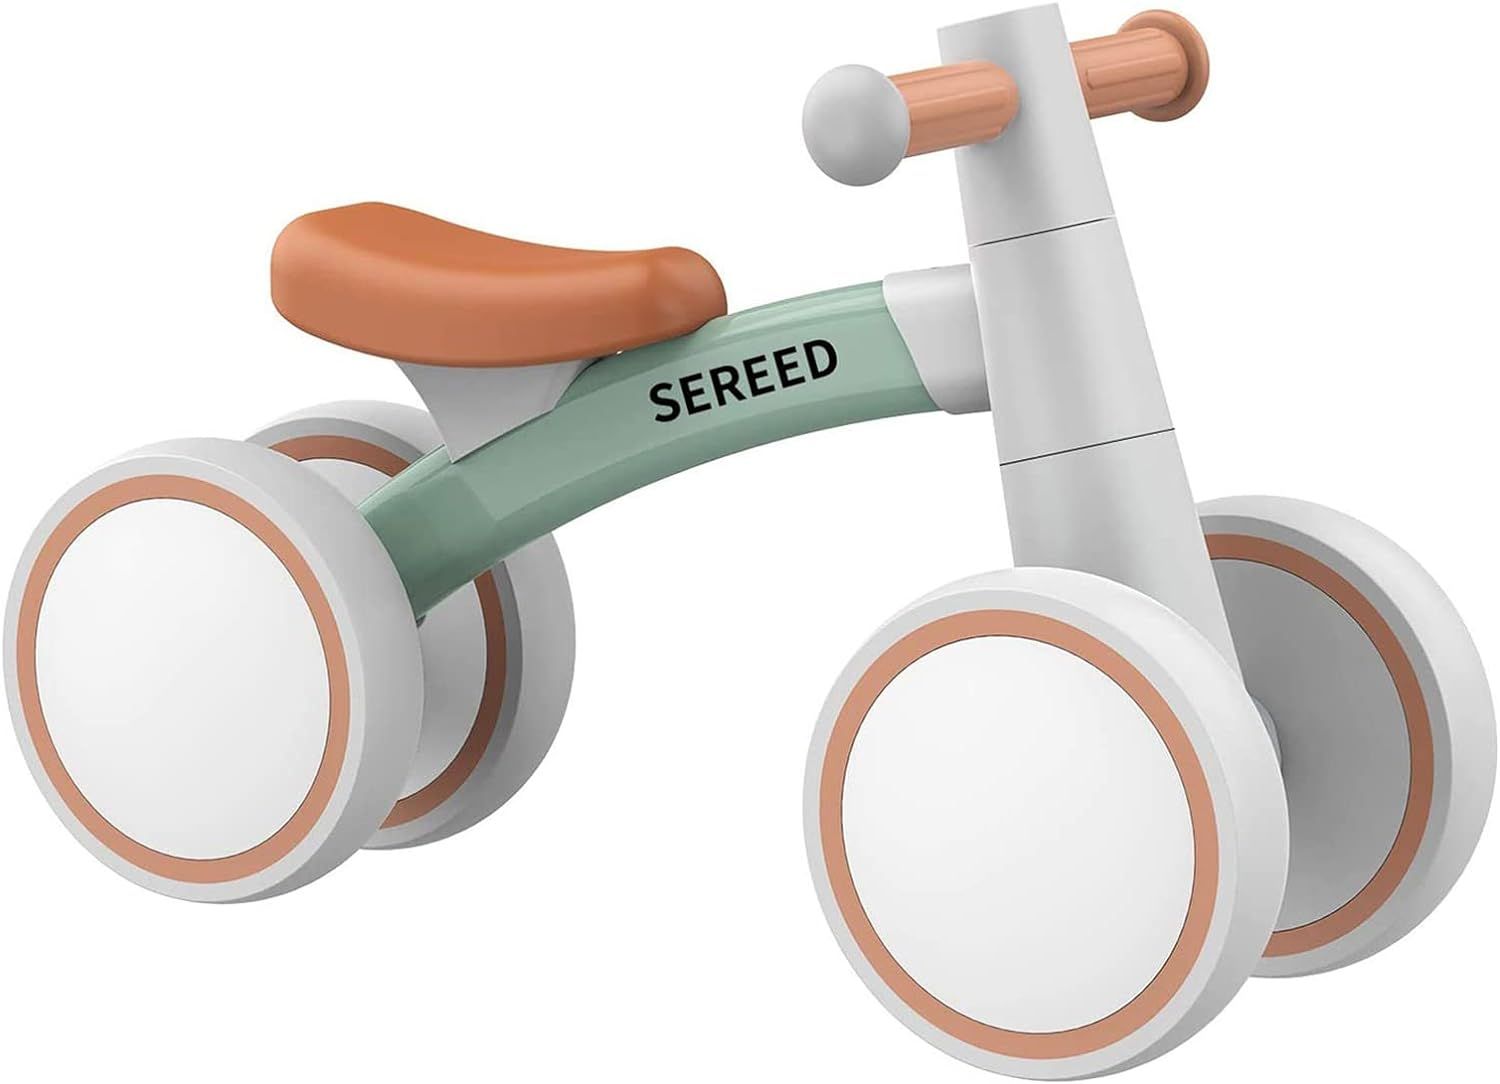 Bicicleta Infantil de Seered